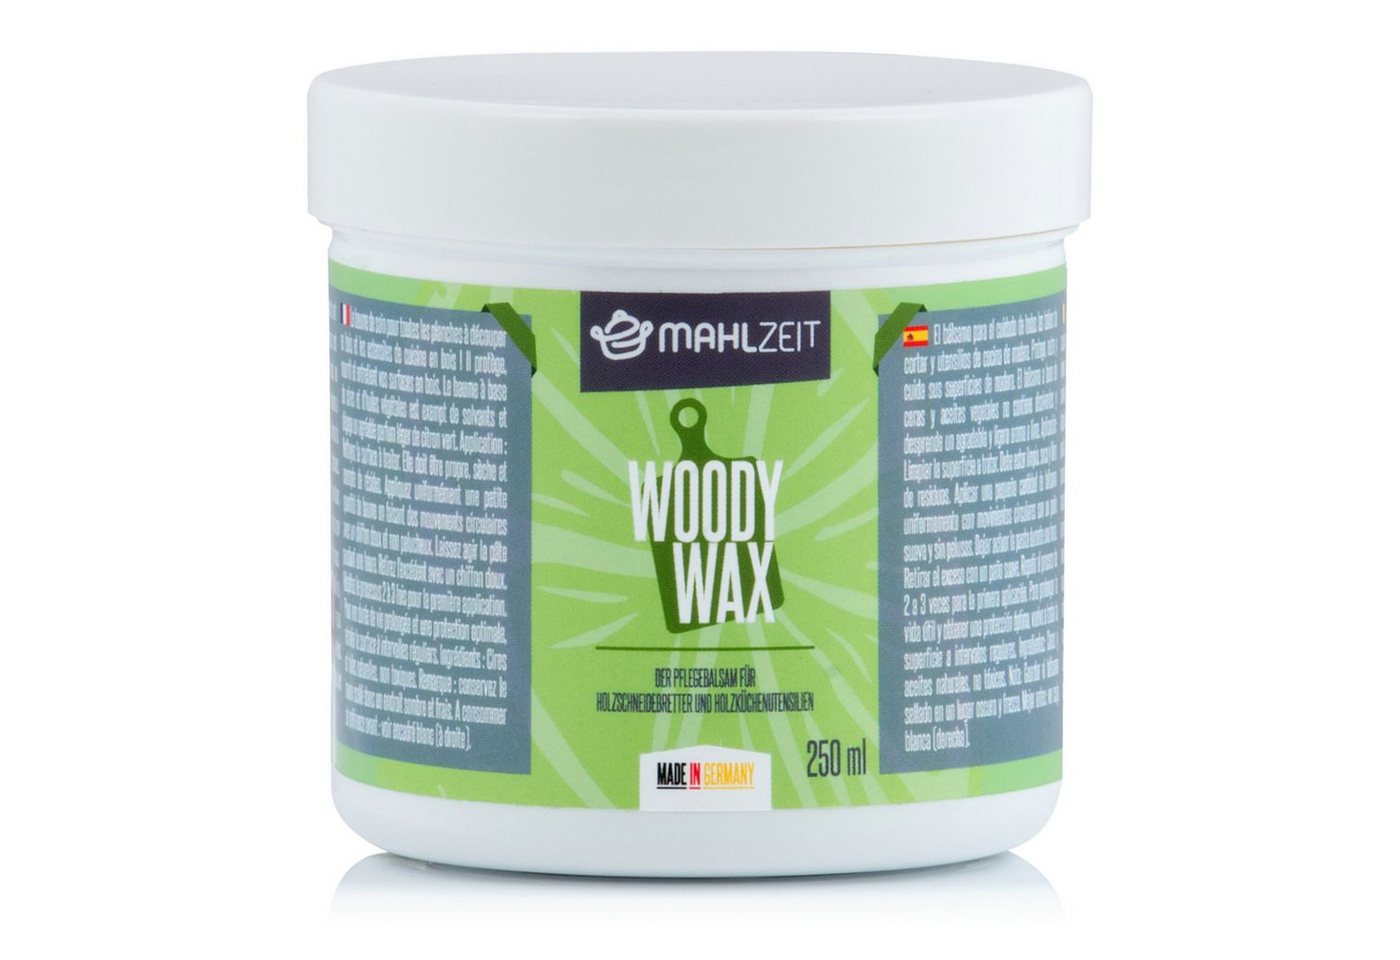 Mahlzeit WOODY WAX Holzpflege für Schneidebrett, 250 ml, 100% natürlich Holzpflegeöl von Mahlzeit